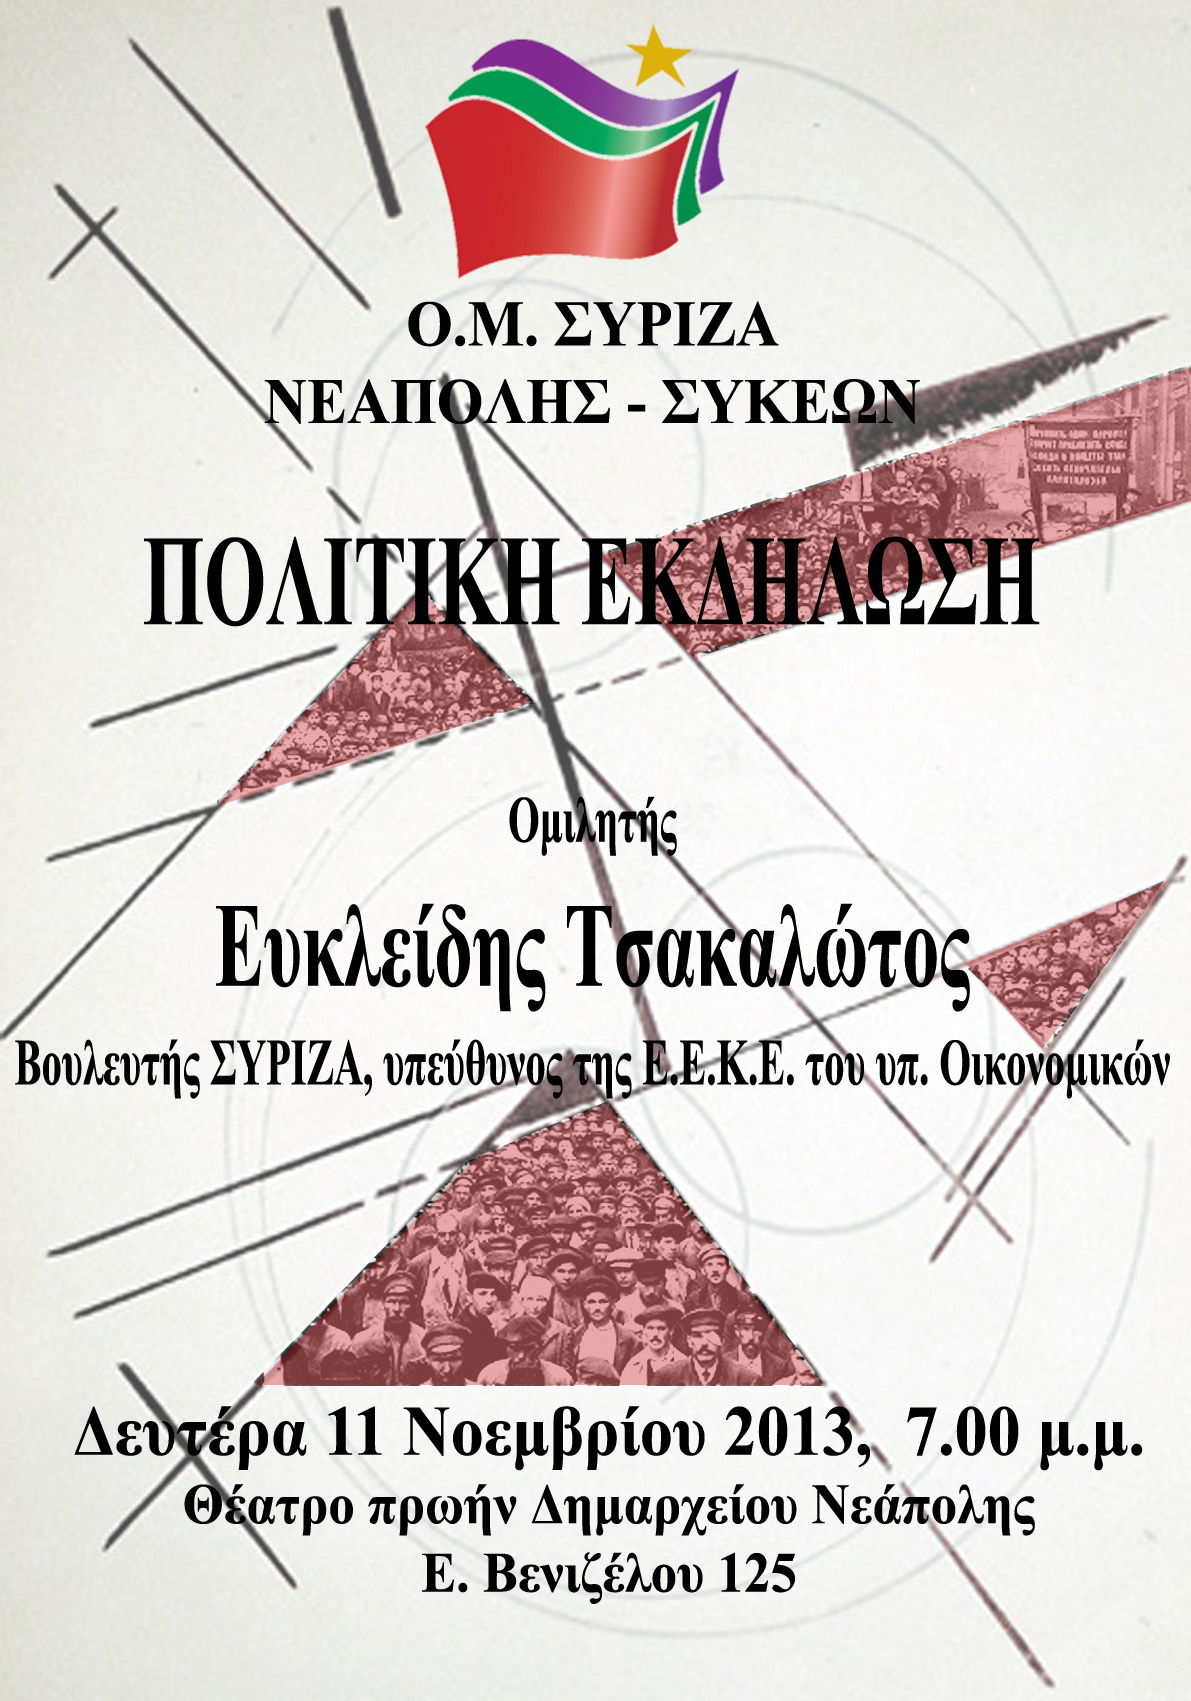 Πολιτική εκδήλωση του ΣΥΡΙΖΑ Νεάπολης-Συκεών με τον Ευκλείδη Τσακαλώτο